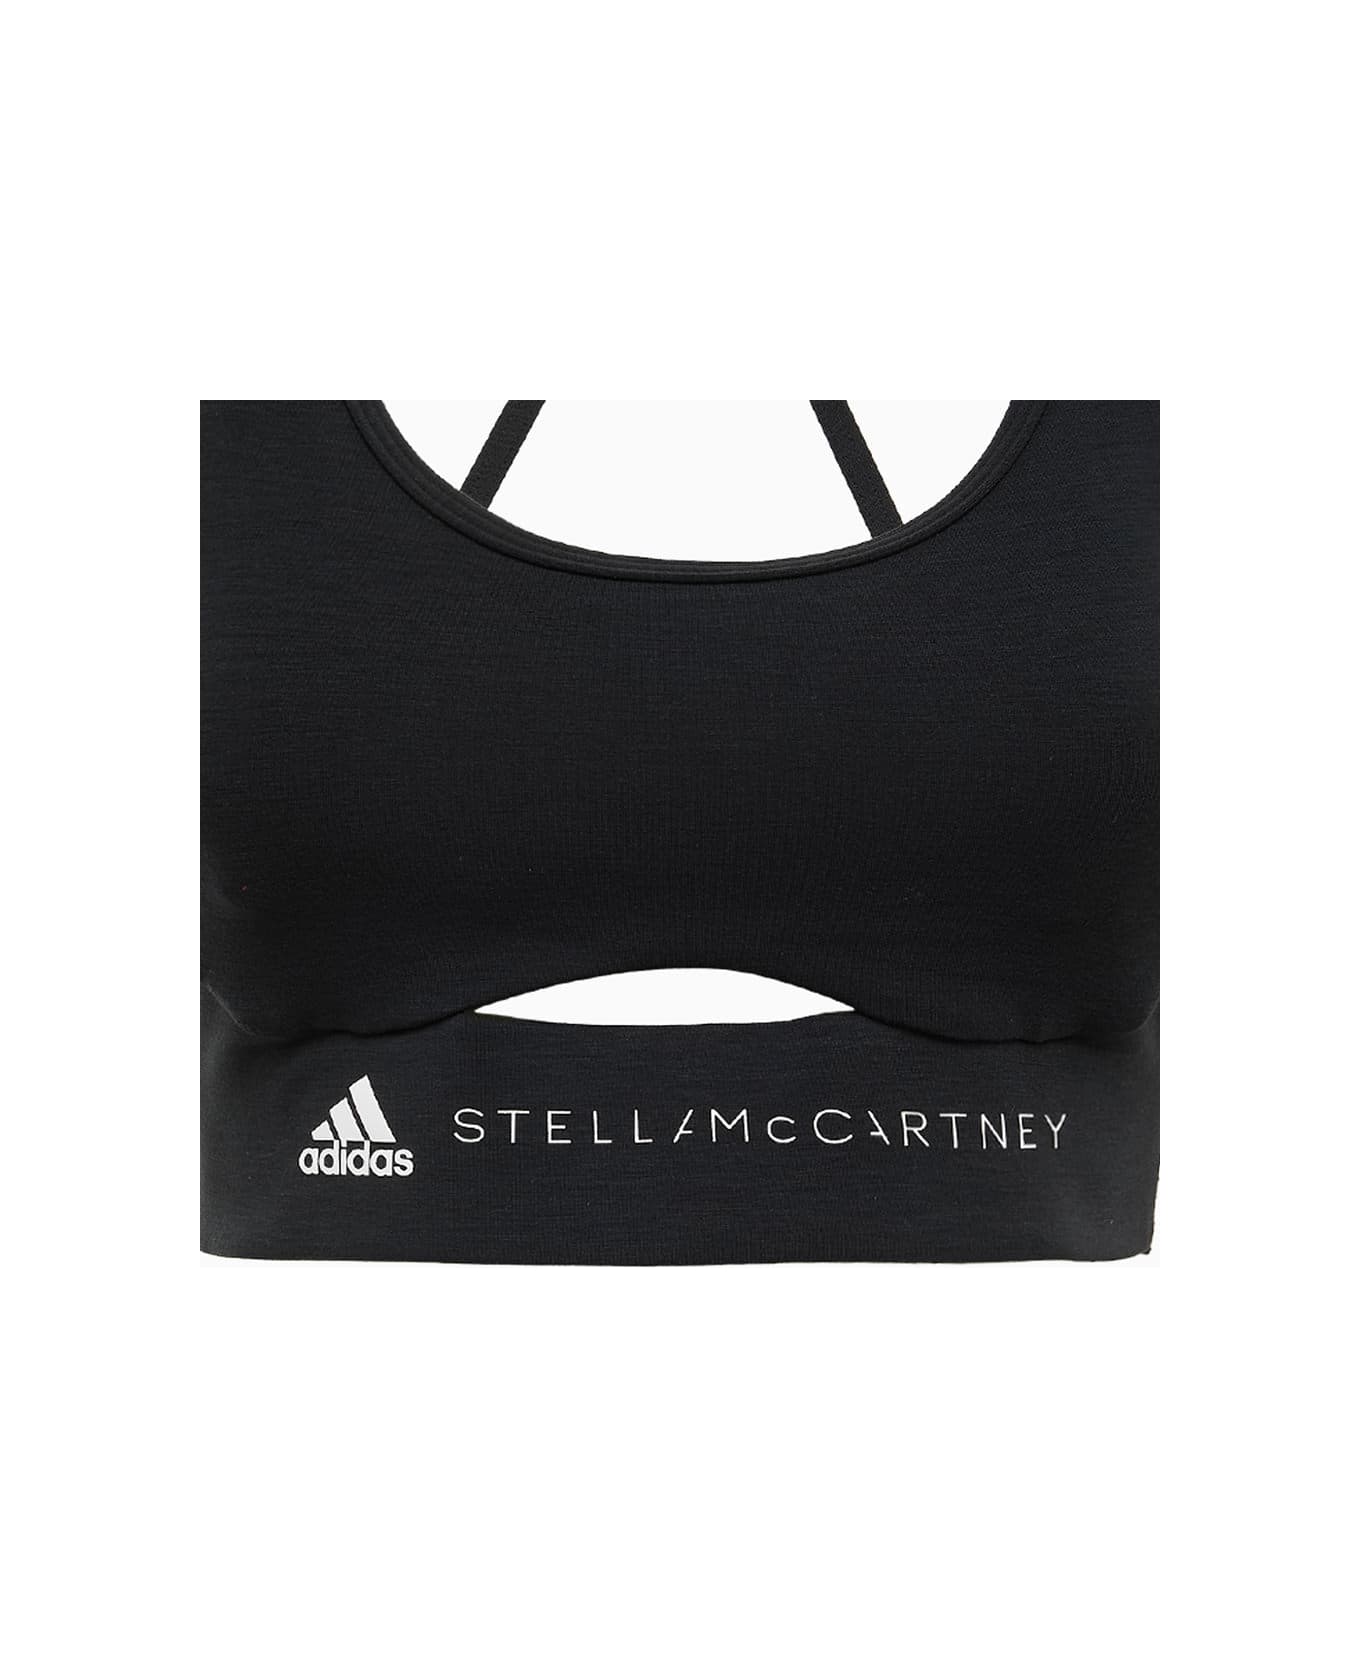 Adidas by Stella McCartney Top Hr2192 - Black